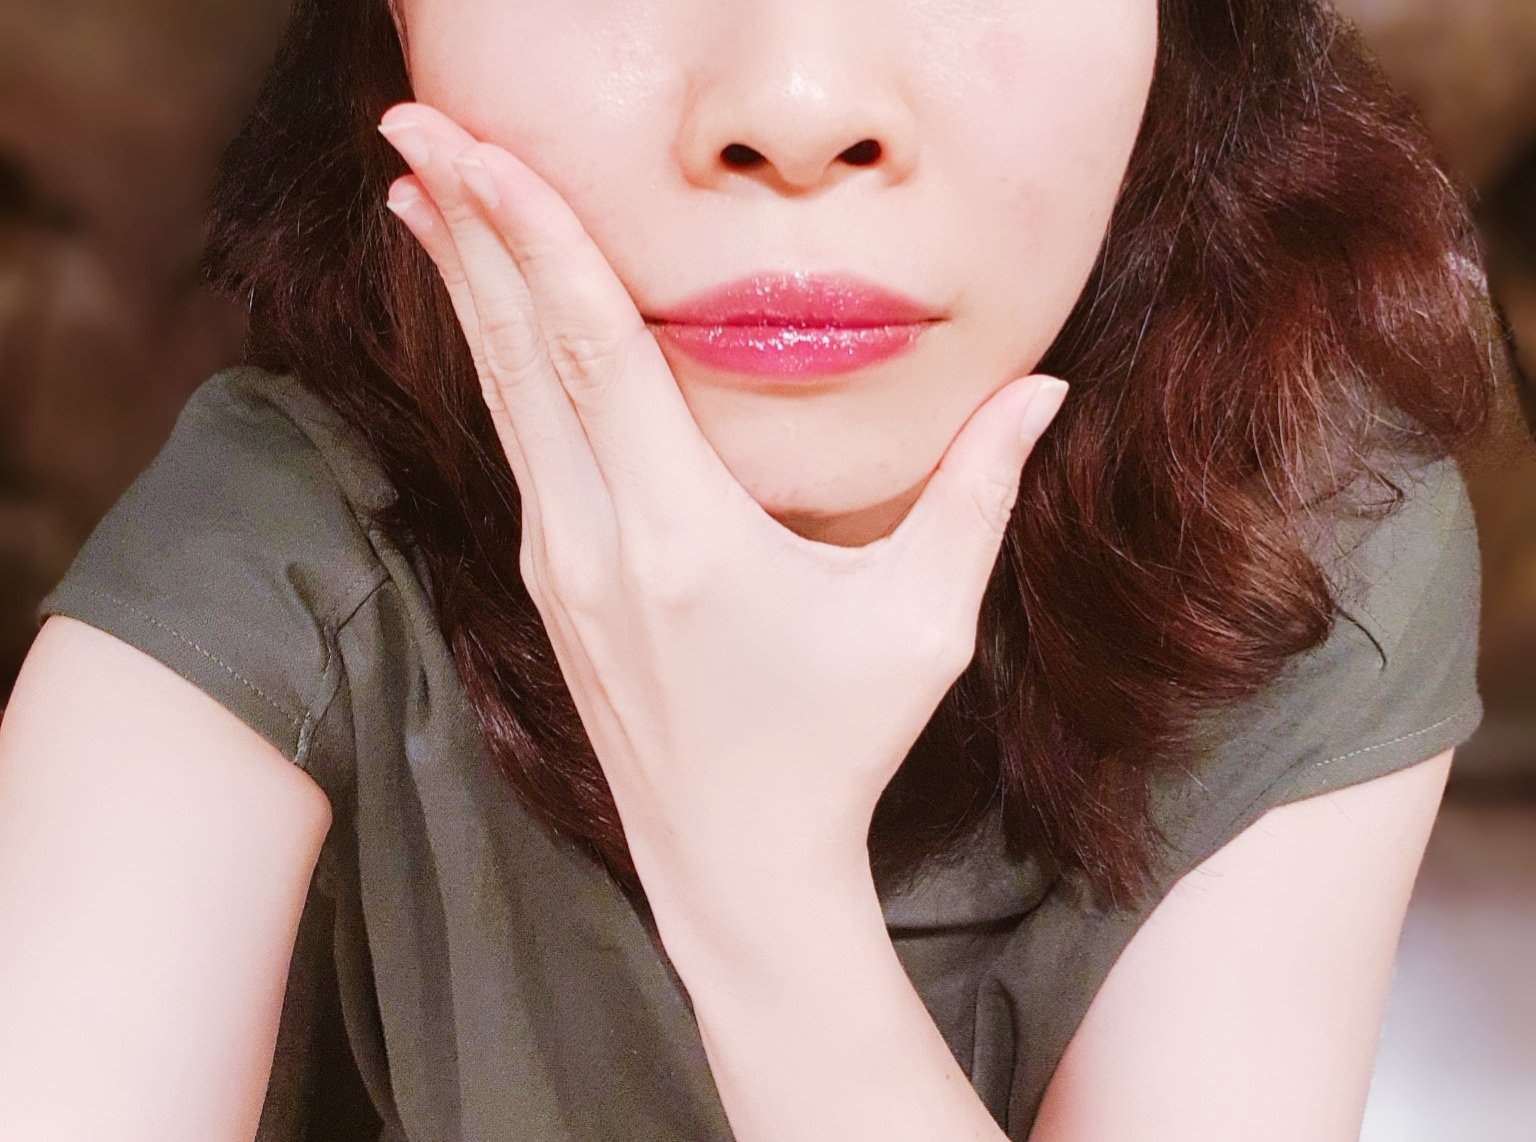 【美妝】日本 Opera Lip Tint 渲漾水色唇膏 限定色 #11燦粉 #12瑩紅 閃爍晶亮款 | 試色